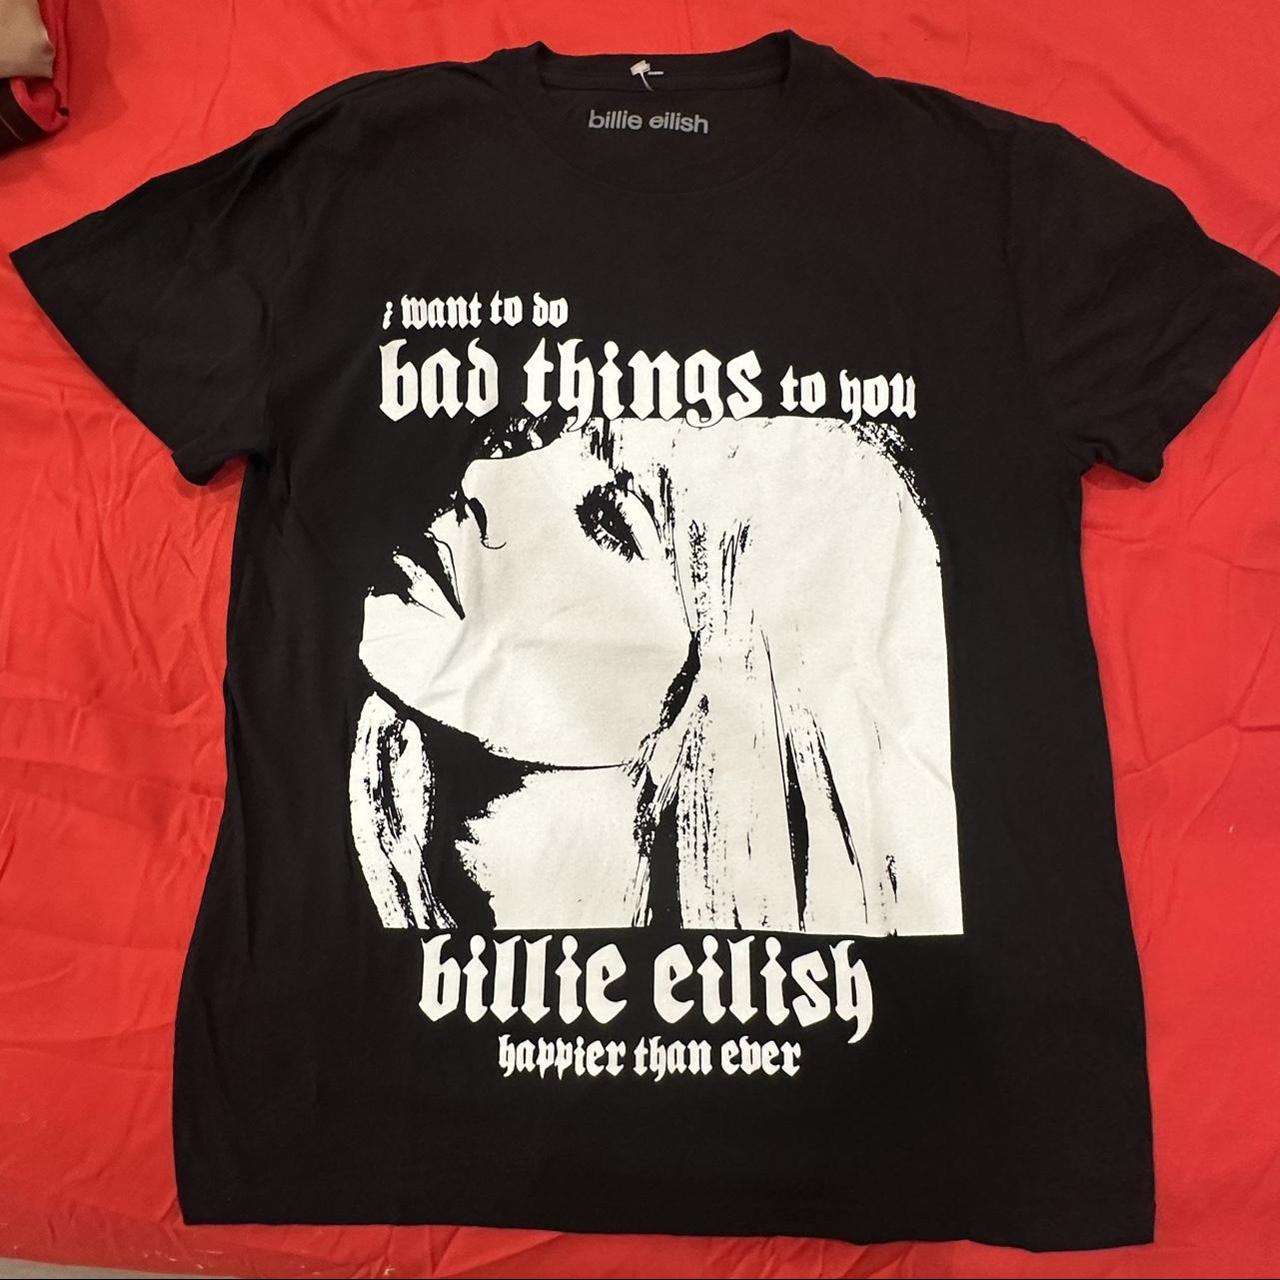 Billieblush Women's Black and White T-shirt (2)